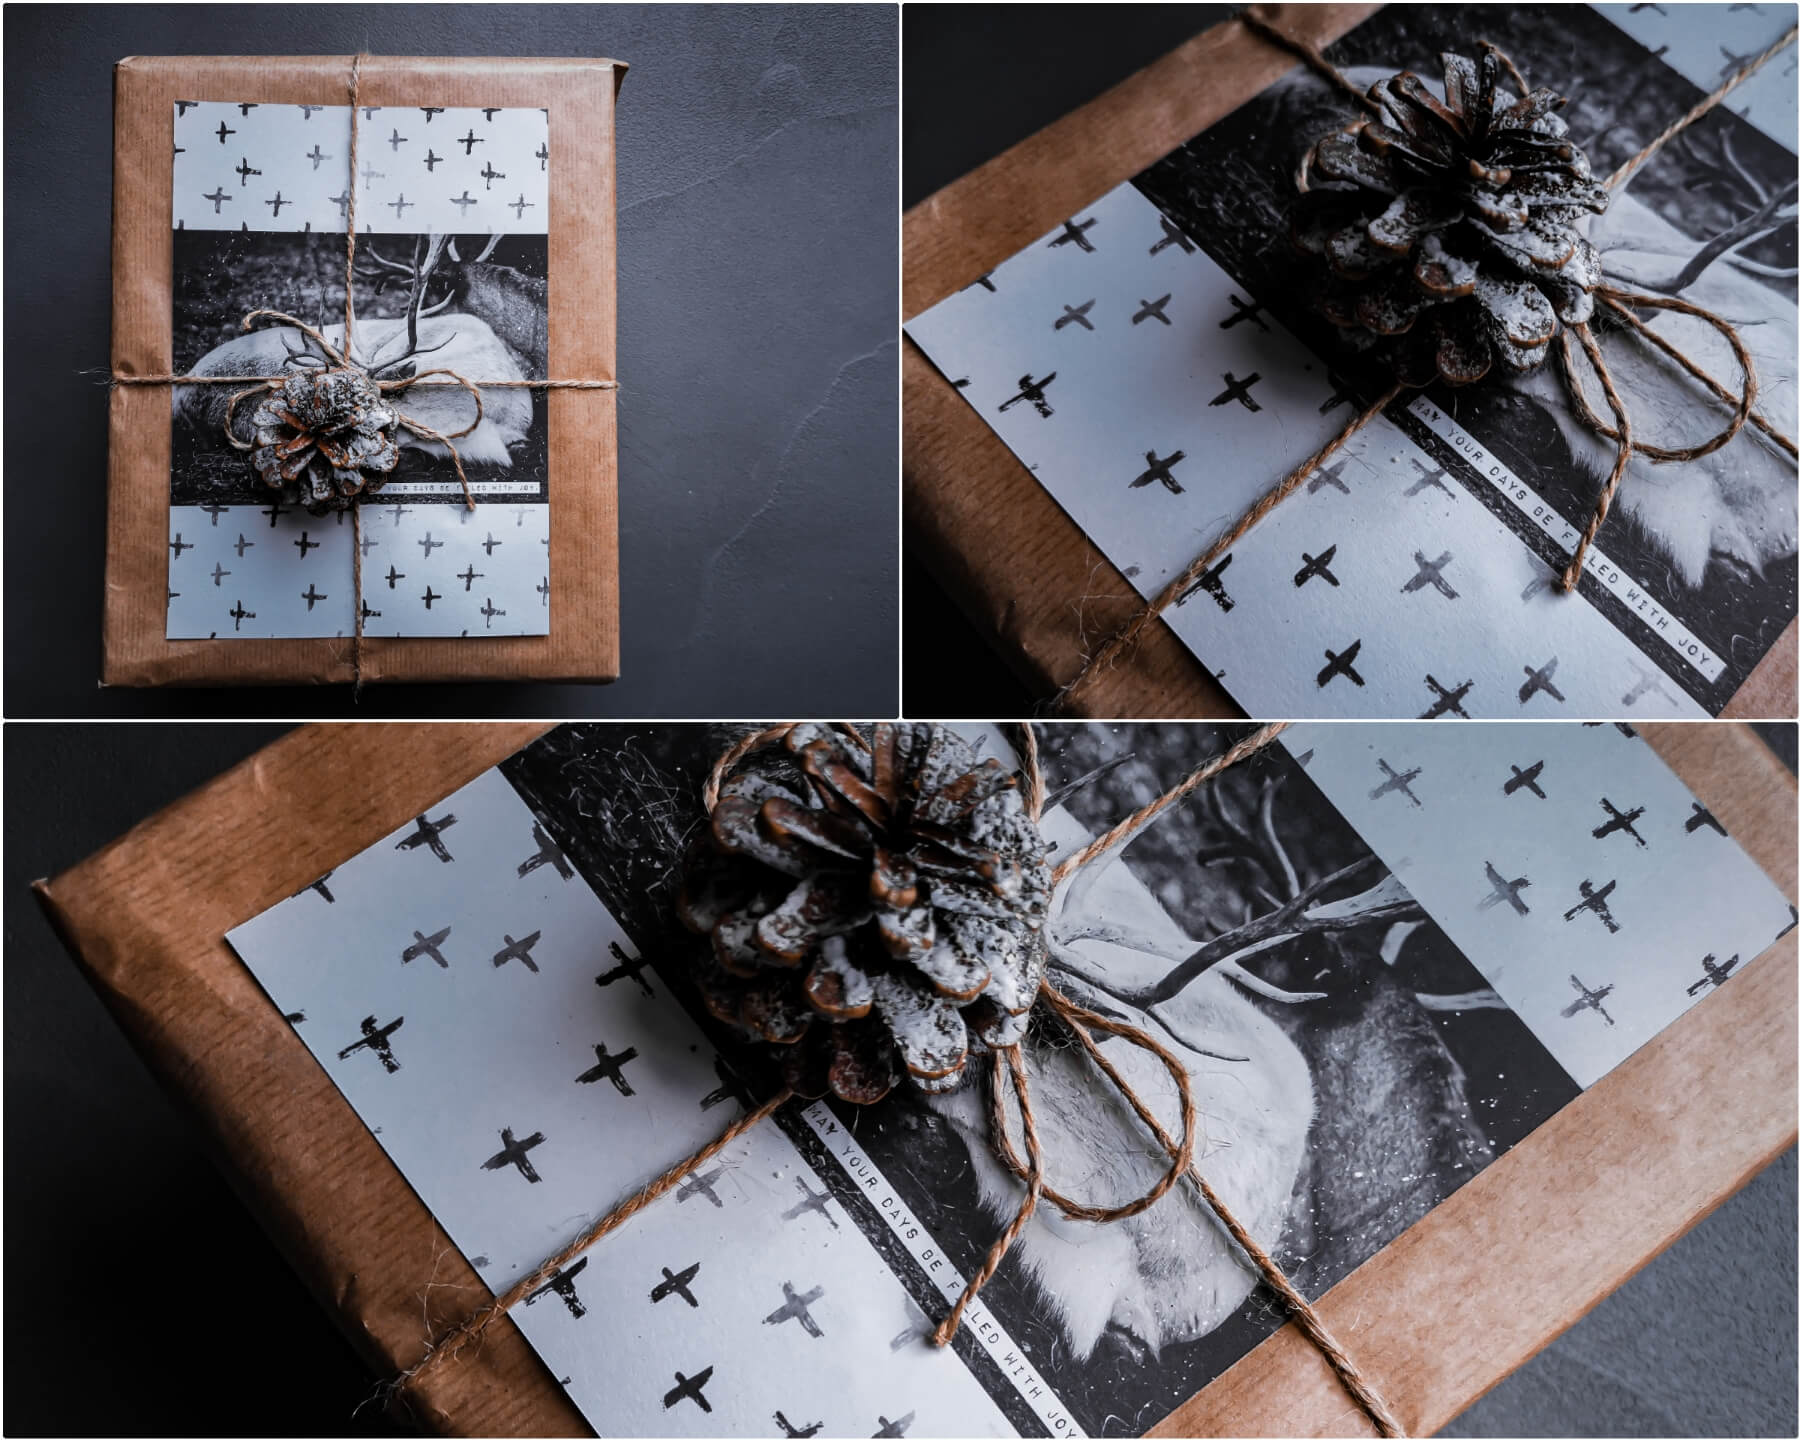 inCollage 20191208 165212146 resized 20191208 050953580 - Geschenke verpacken: 11 kreative Tipps zum Selbermachen